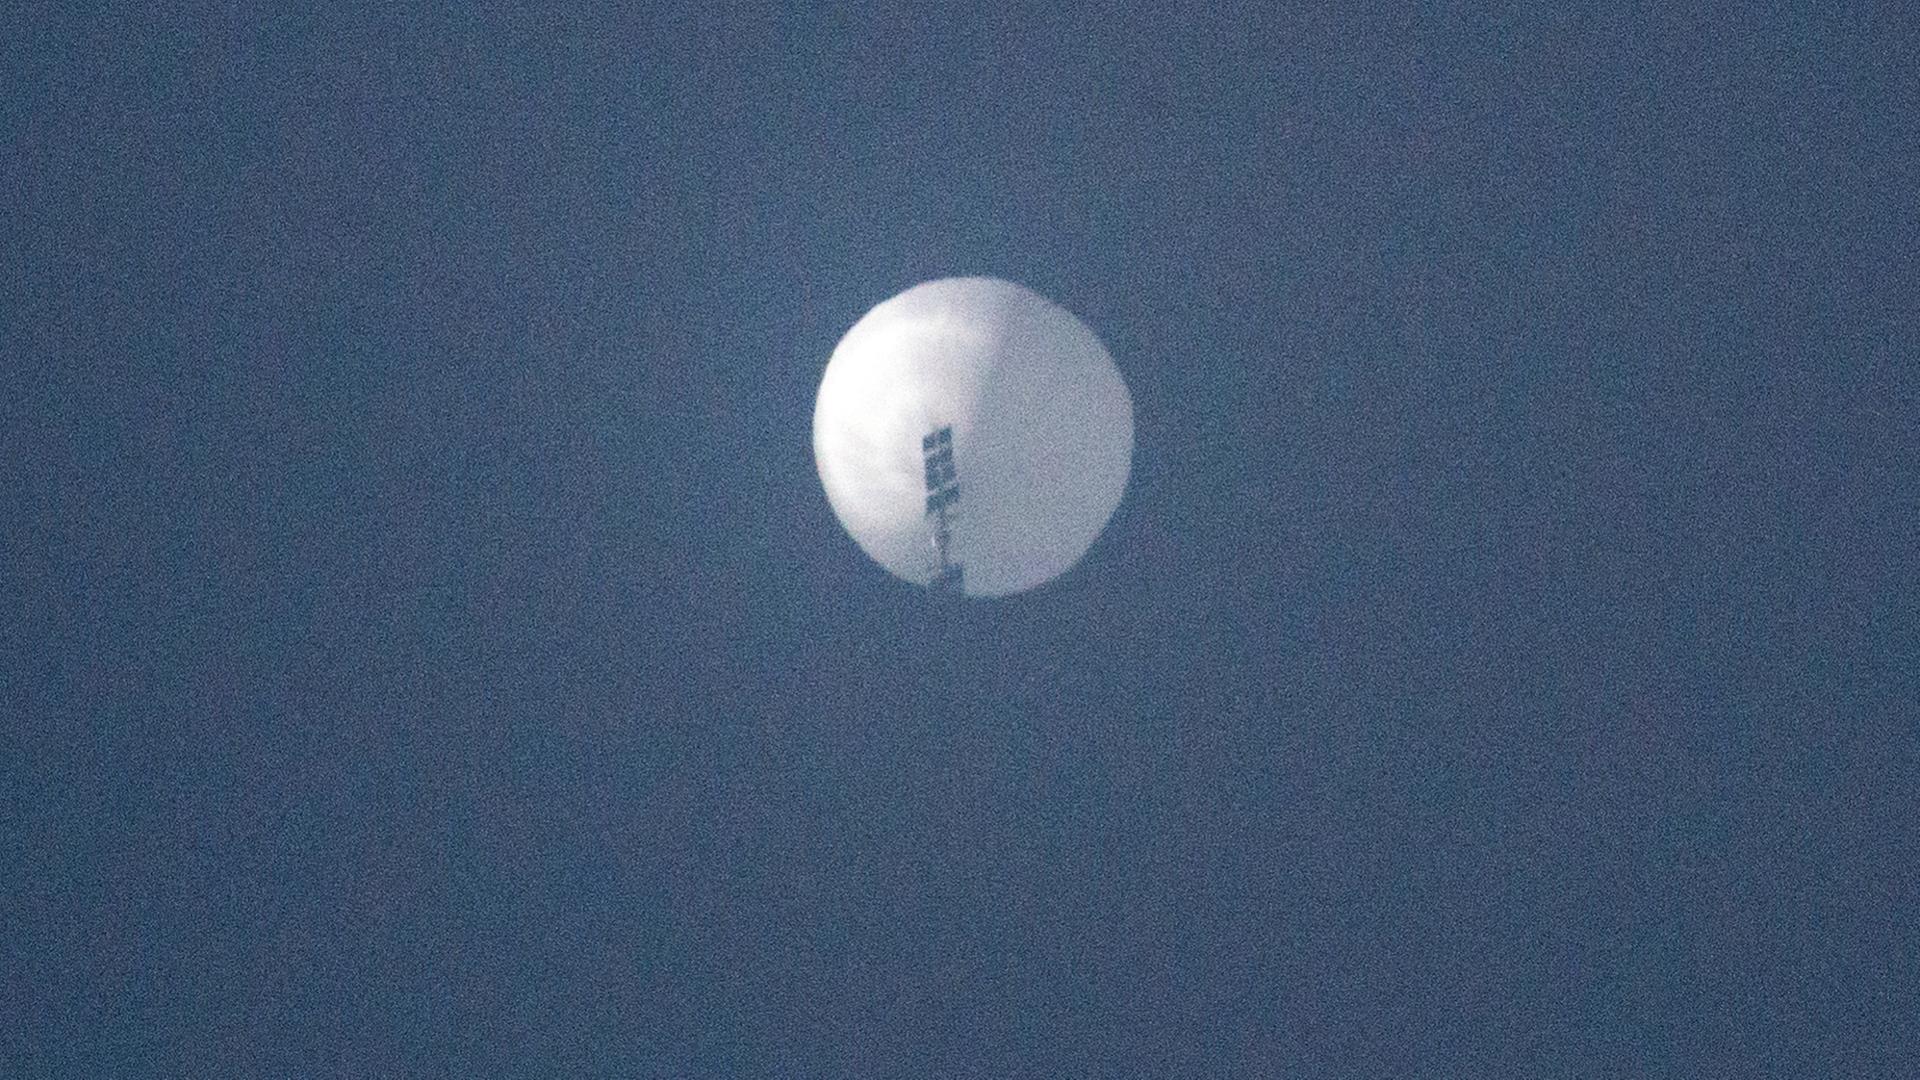 Man sieht den weißen Ballon weit entfernt von unten vor blauem Himmel.